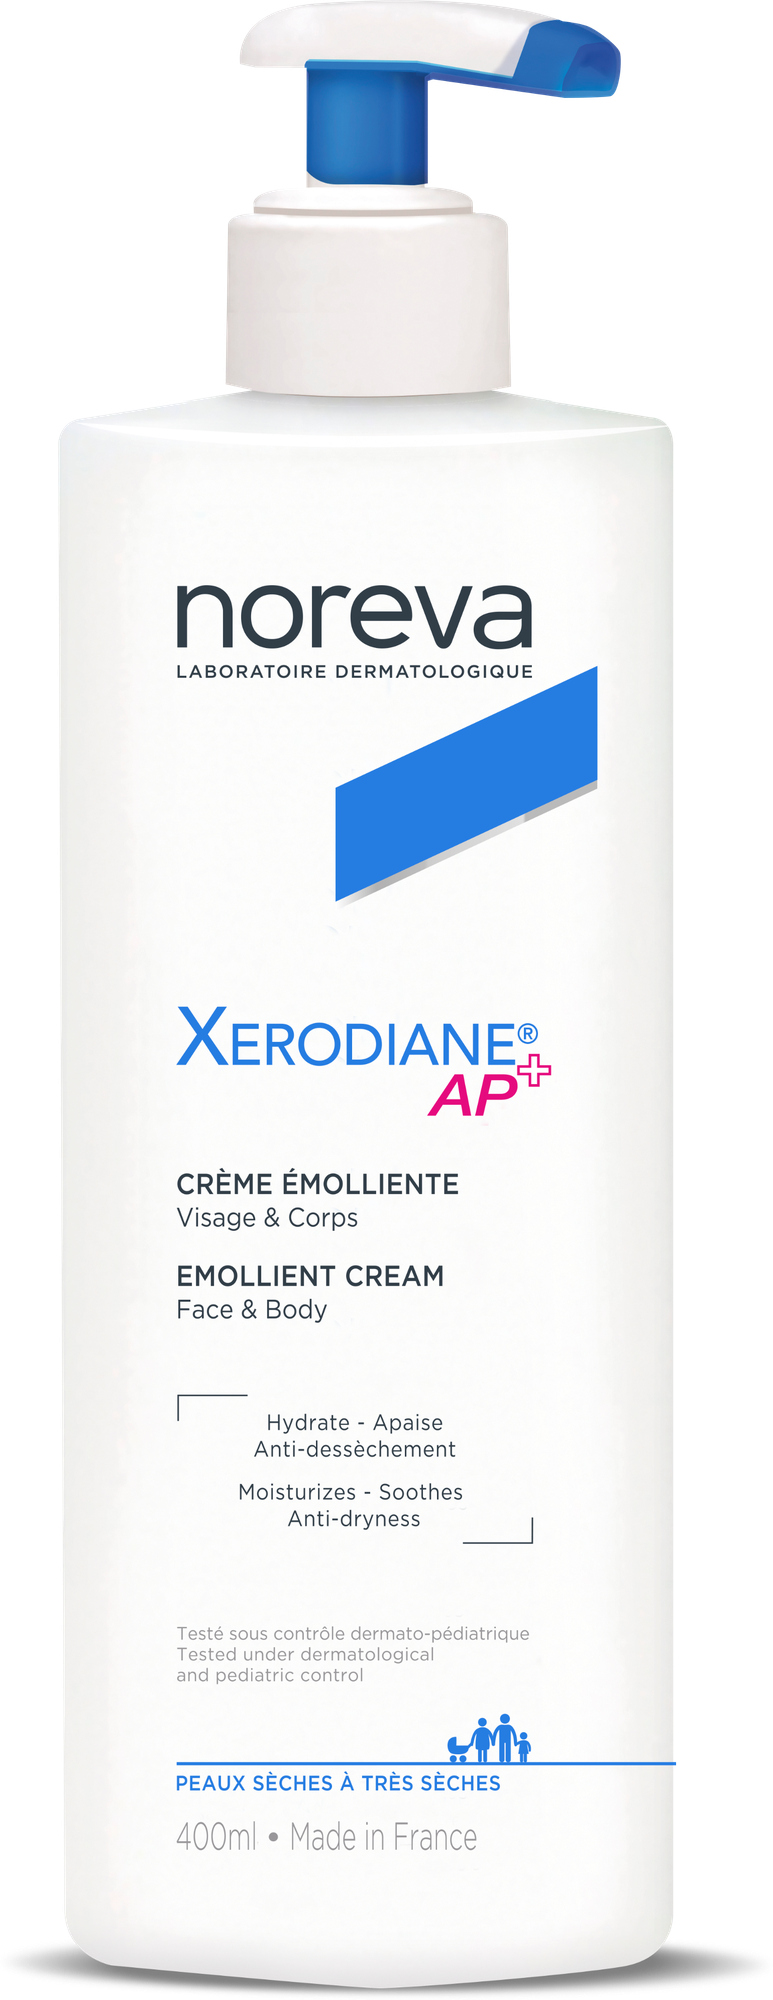 Noreva Крем-эмольянт для очень сухой и атопичной кожи Ксеродиан АР+, 400 мл (Noreva, ) - фото №8